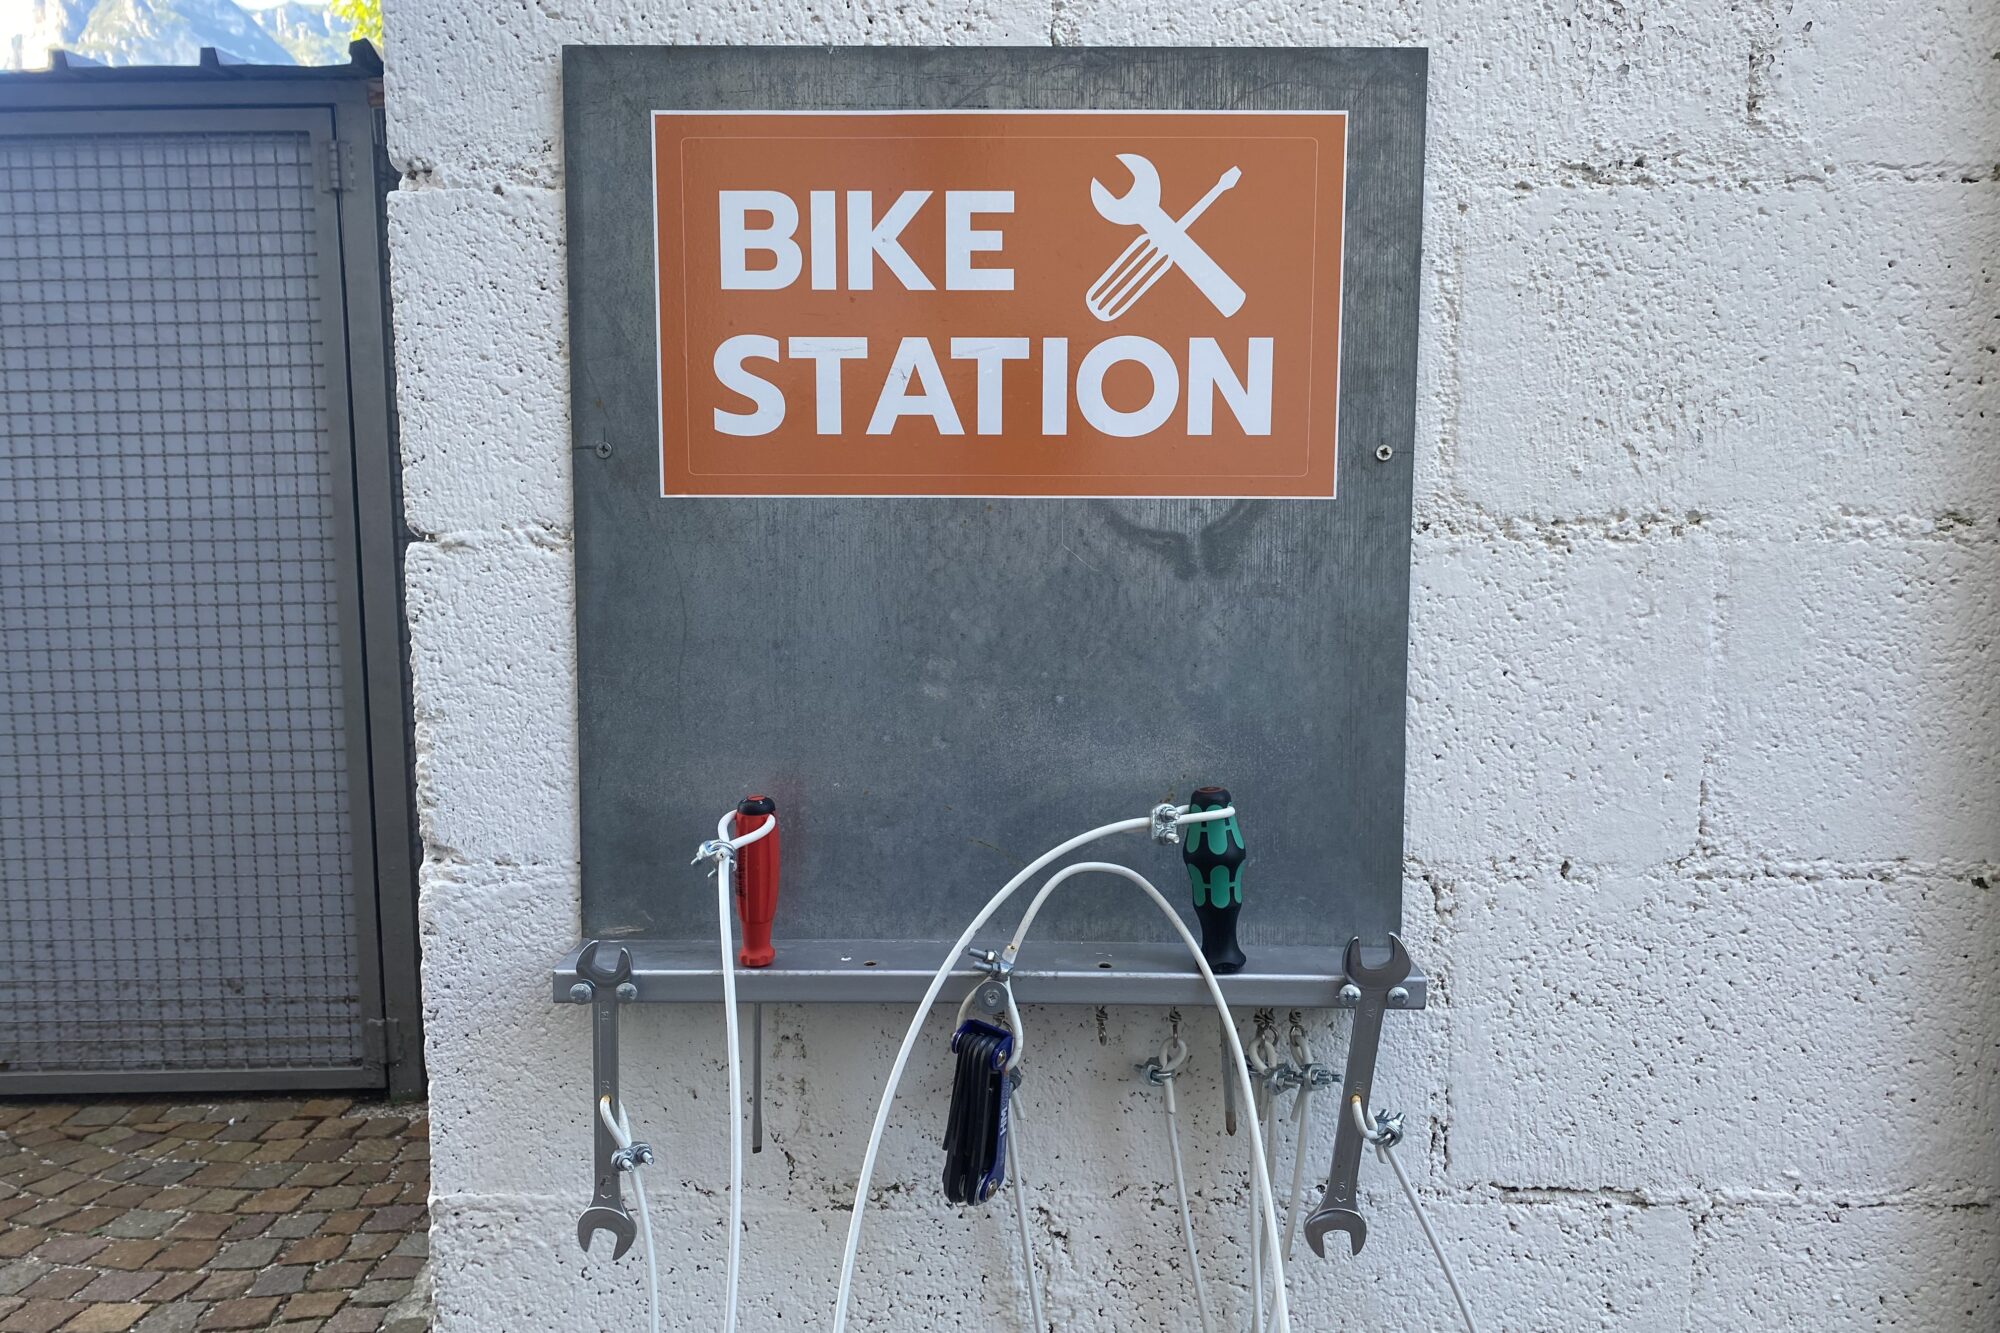 Bike repair area